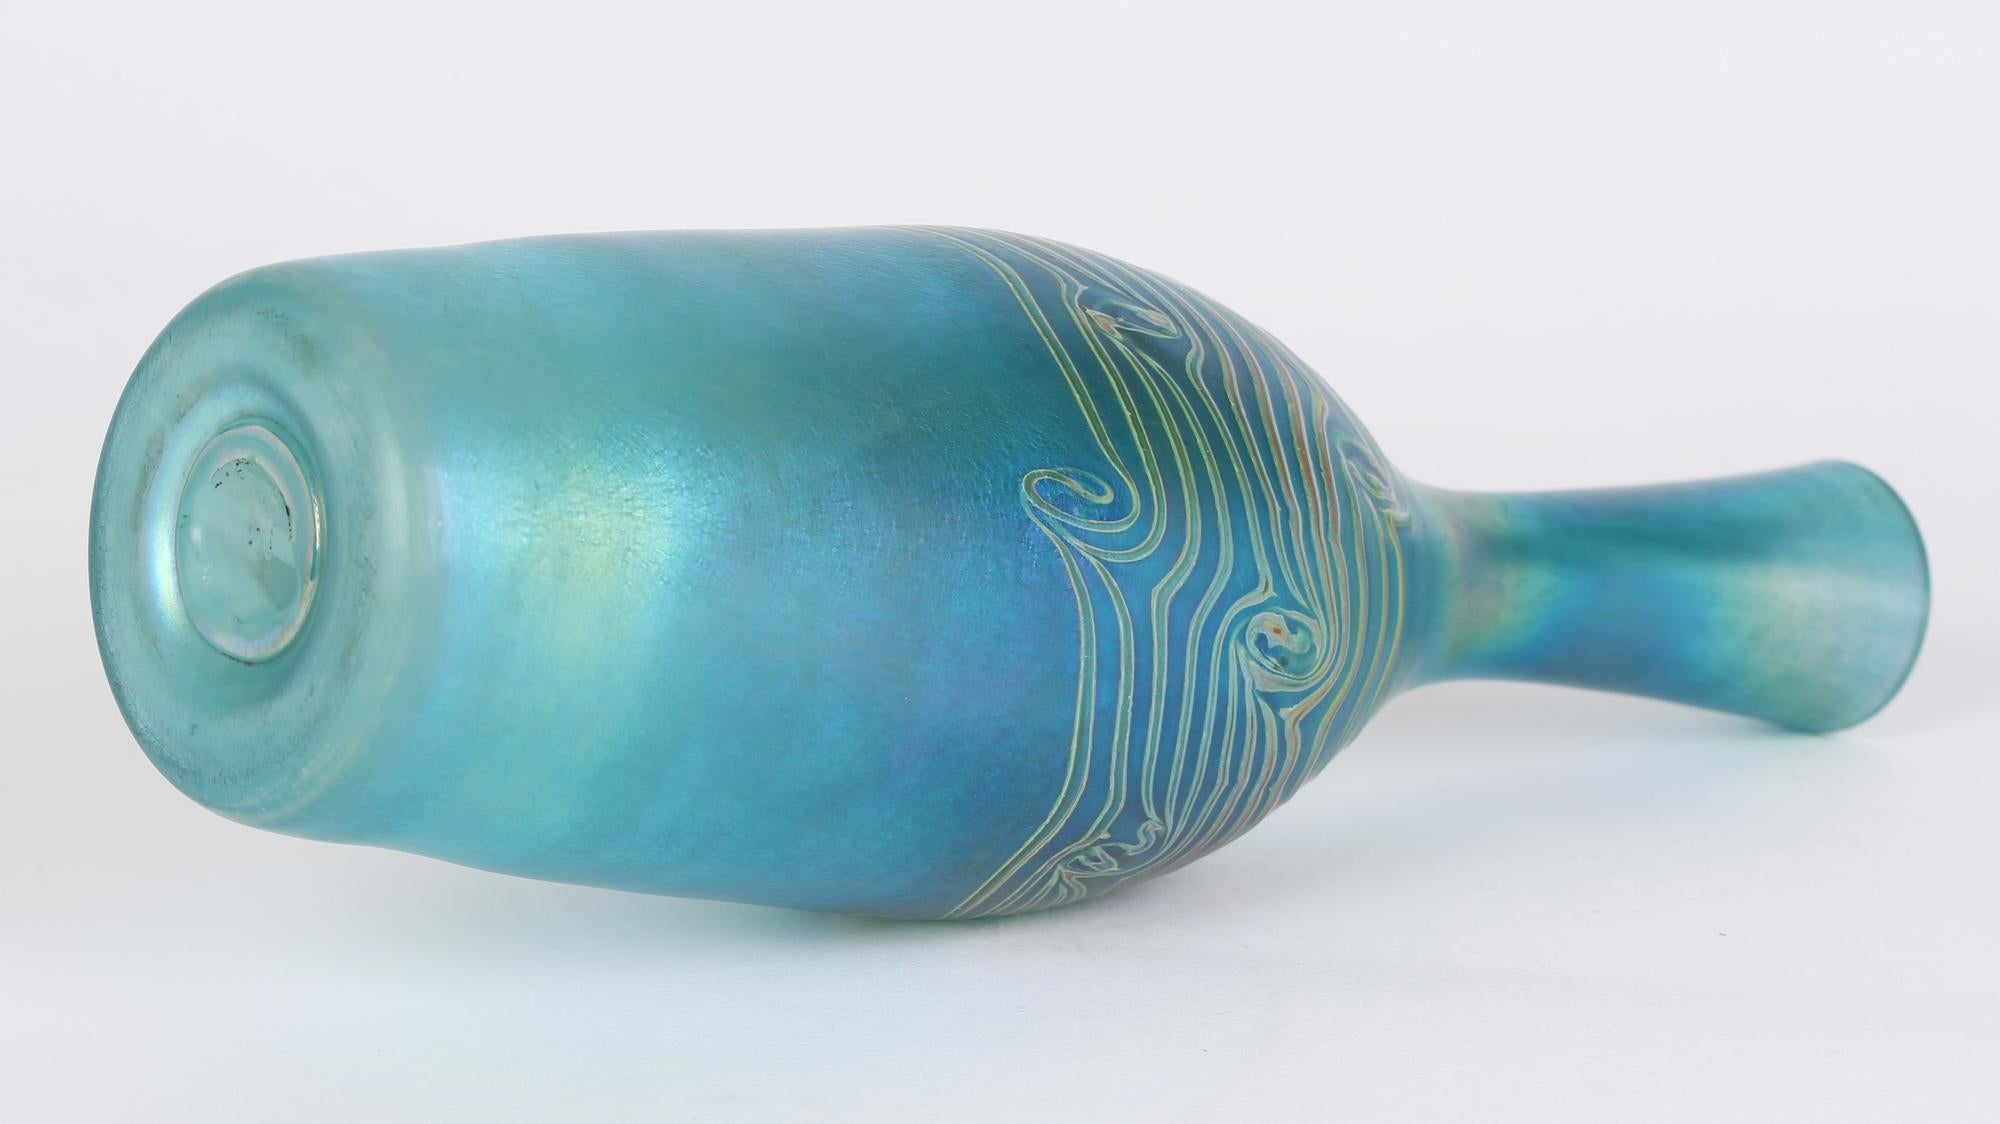 Grand et élégant vase en verre d'art en forme de bouteille bleu irisé avec des motifs de paons traînants datant du 20e siècle. Le vase soufflé à la main est de forme élancée et est magnifiquement réalisé en verre teinté bleu avec une merveilleuse